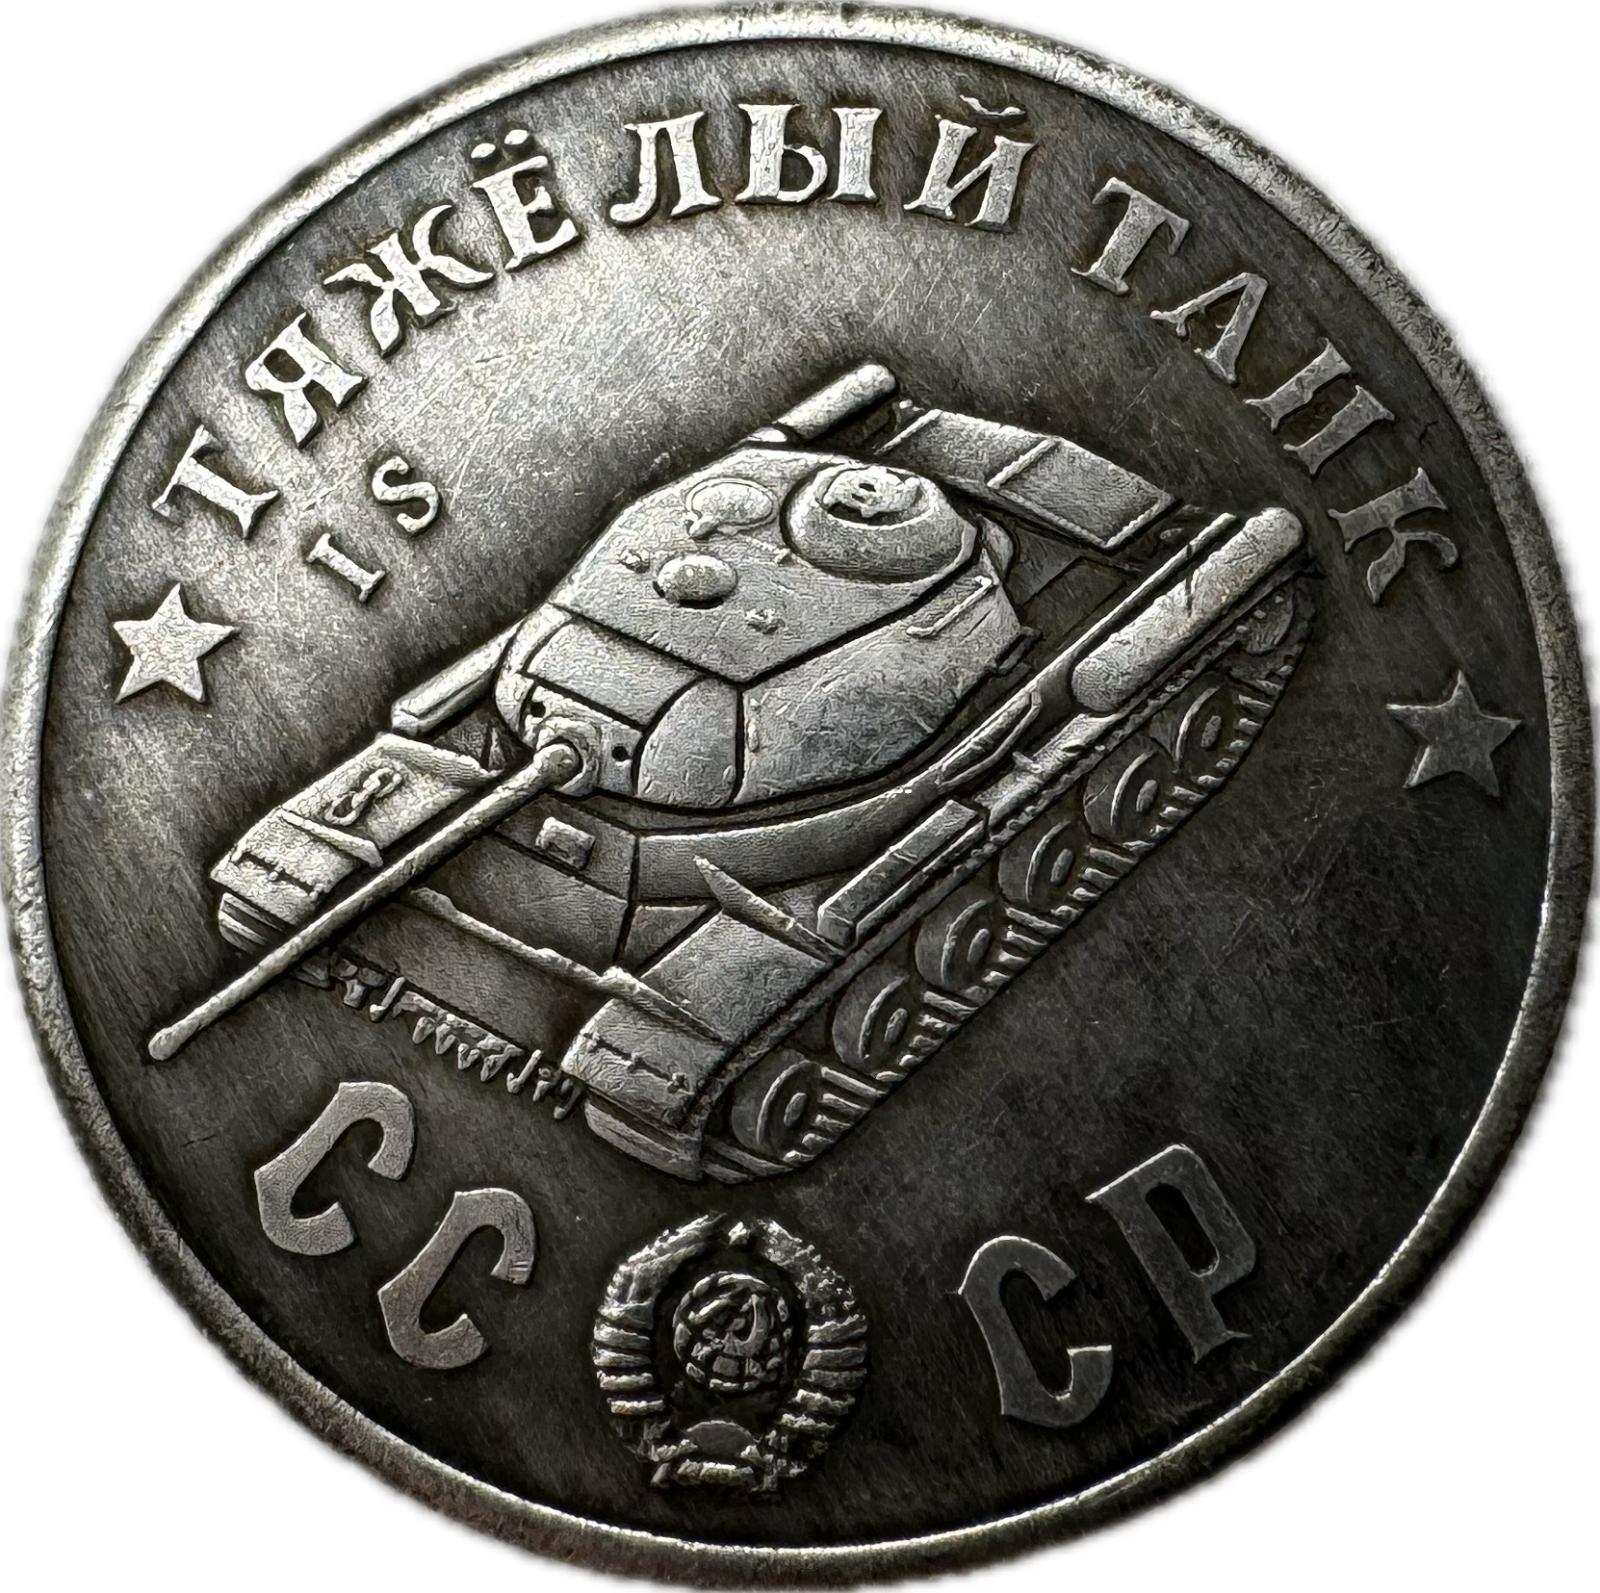 Zberateľská novoražba medaily - Sovietsky ťažký tank IS - Zberateľstvo